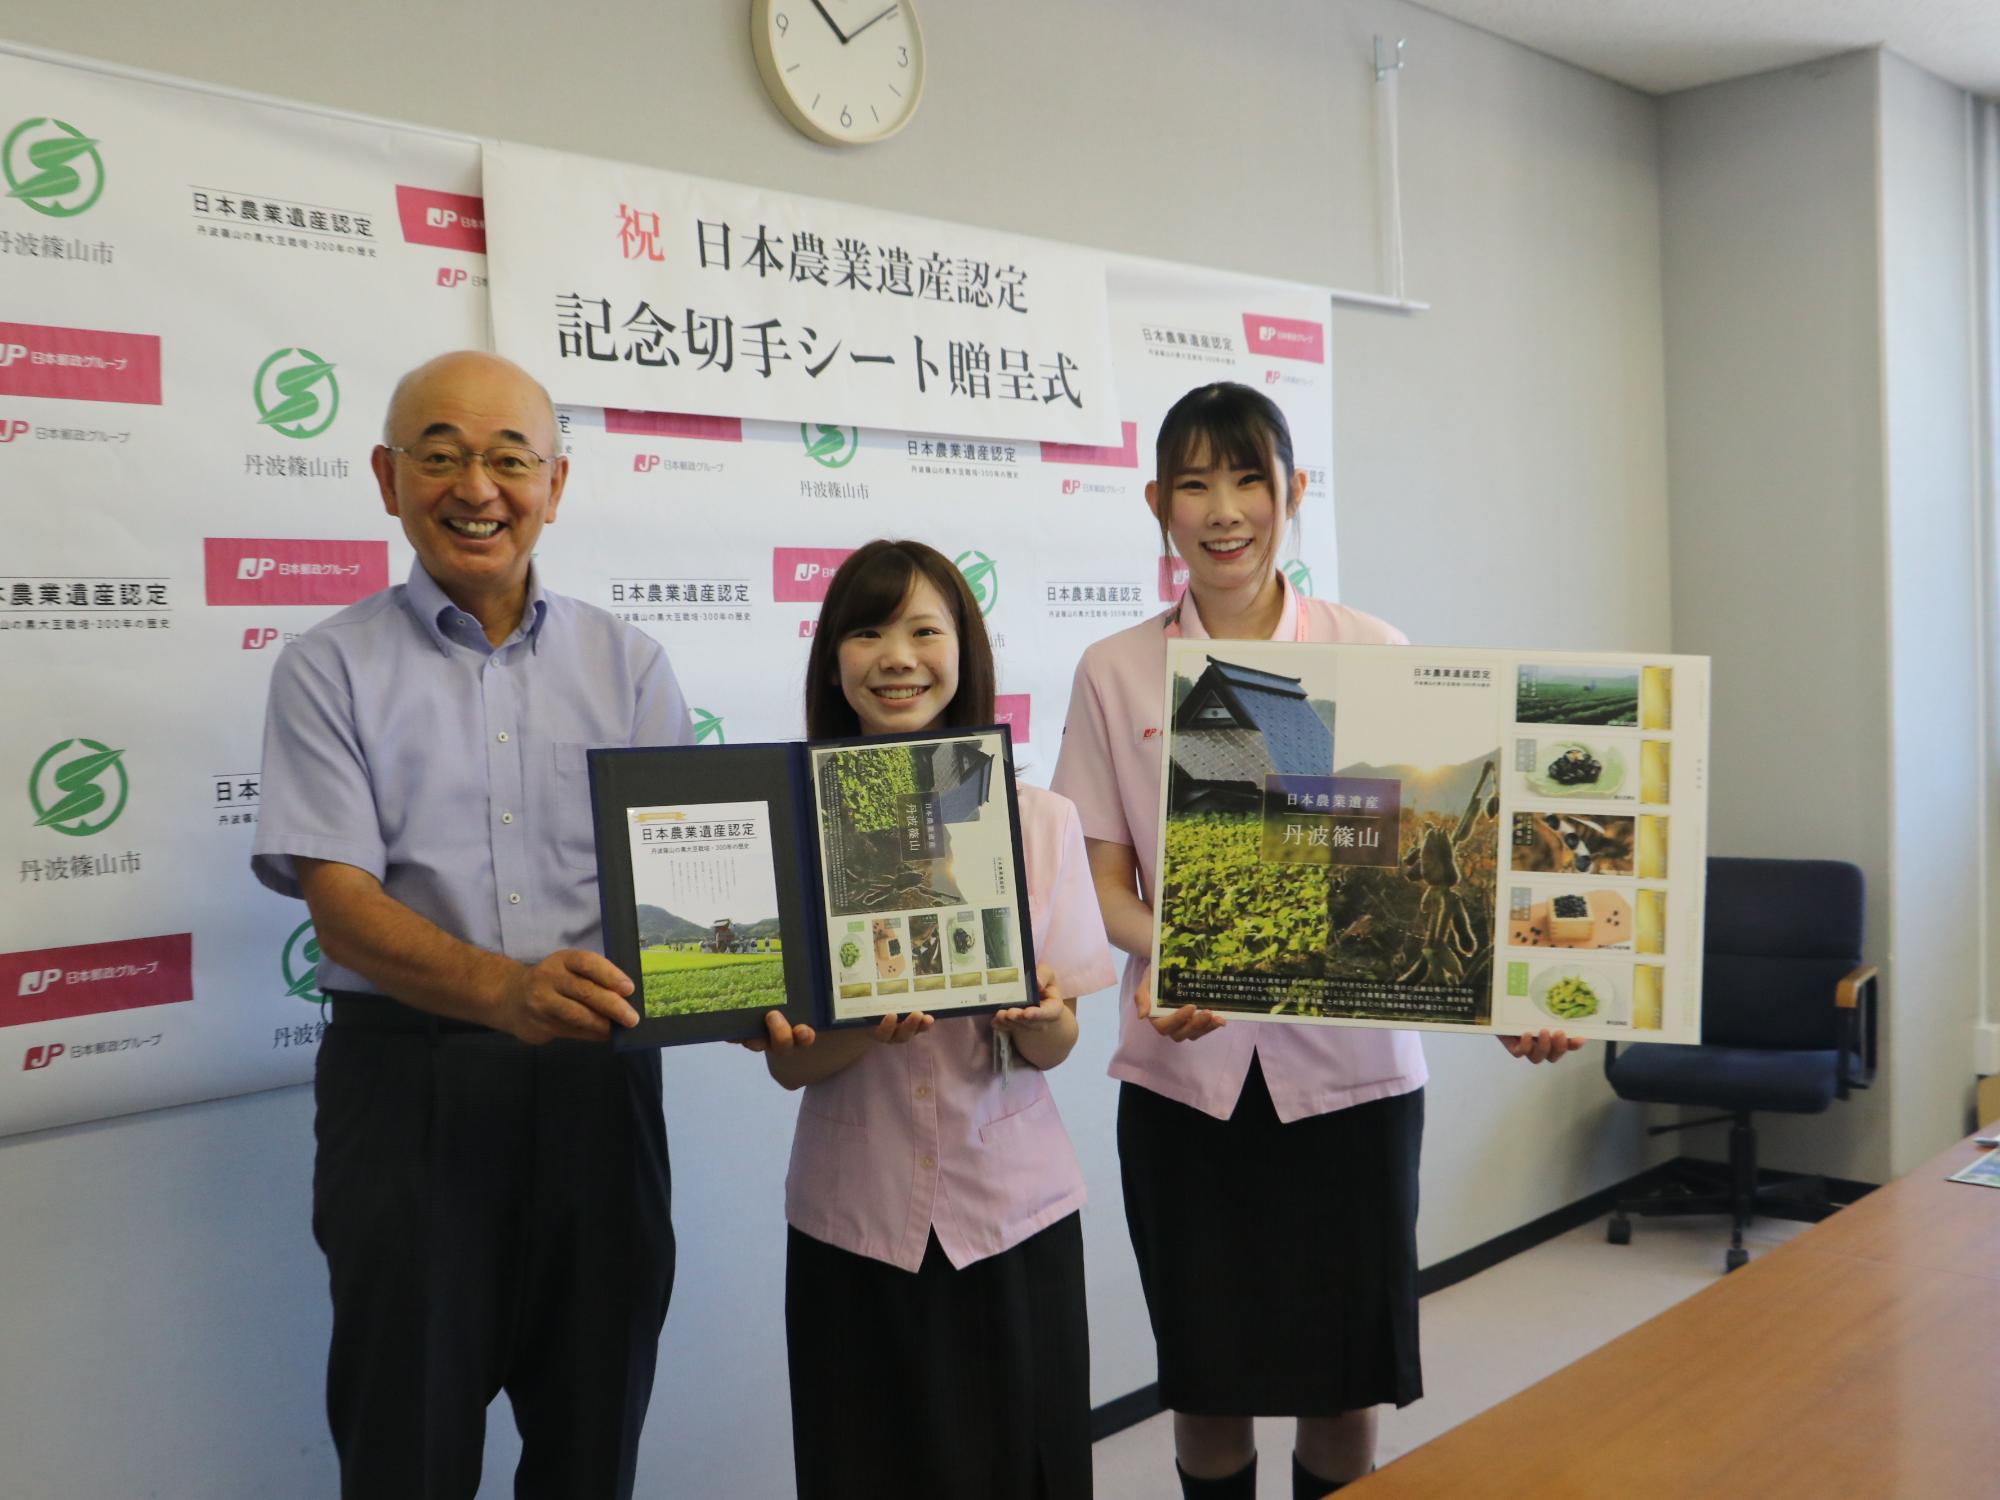 市長と女性の郵便局員が日本農業遺産記念切手シートを一緒に持ち、その隣で女性の郵便局員が日本農業遺産のパネルを持っている。